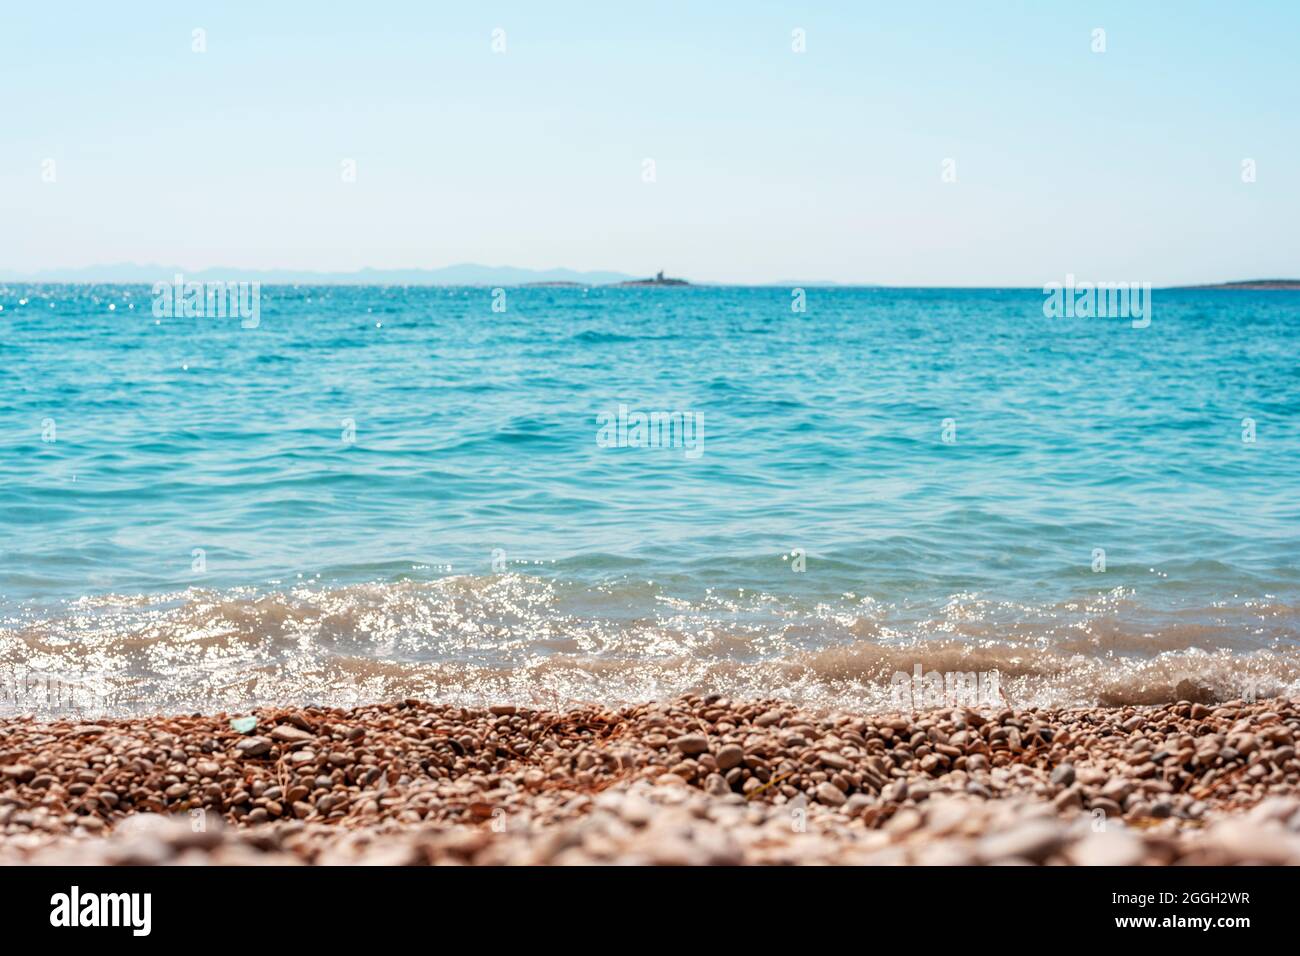 Hermosa playa de guijarros y mar azul con islas. Profundidad de campo baja. Foto de stock